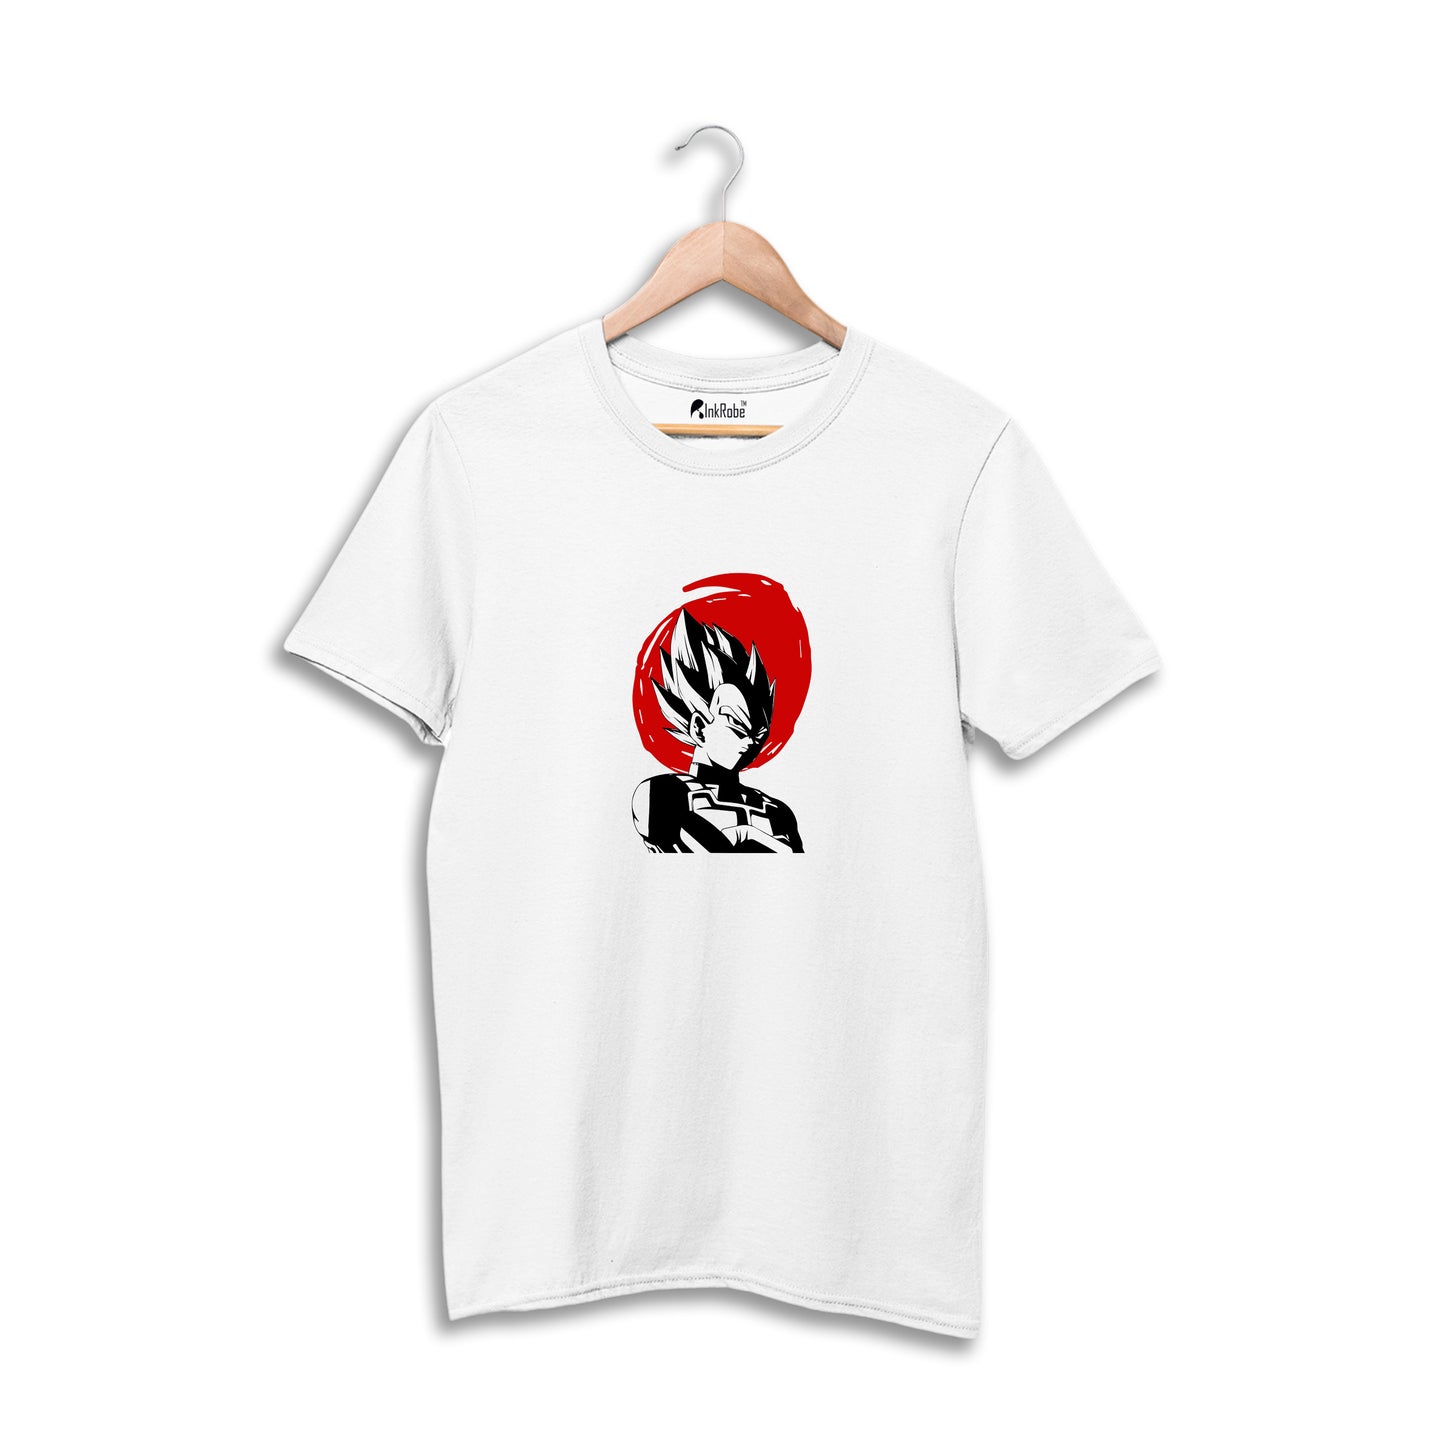 Saiyans Vegeta - Anime T-Shirt